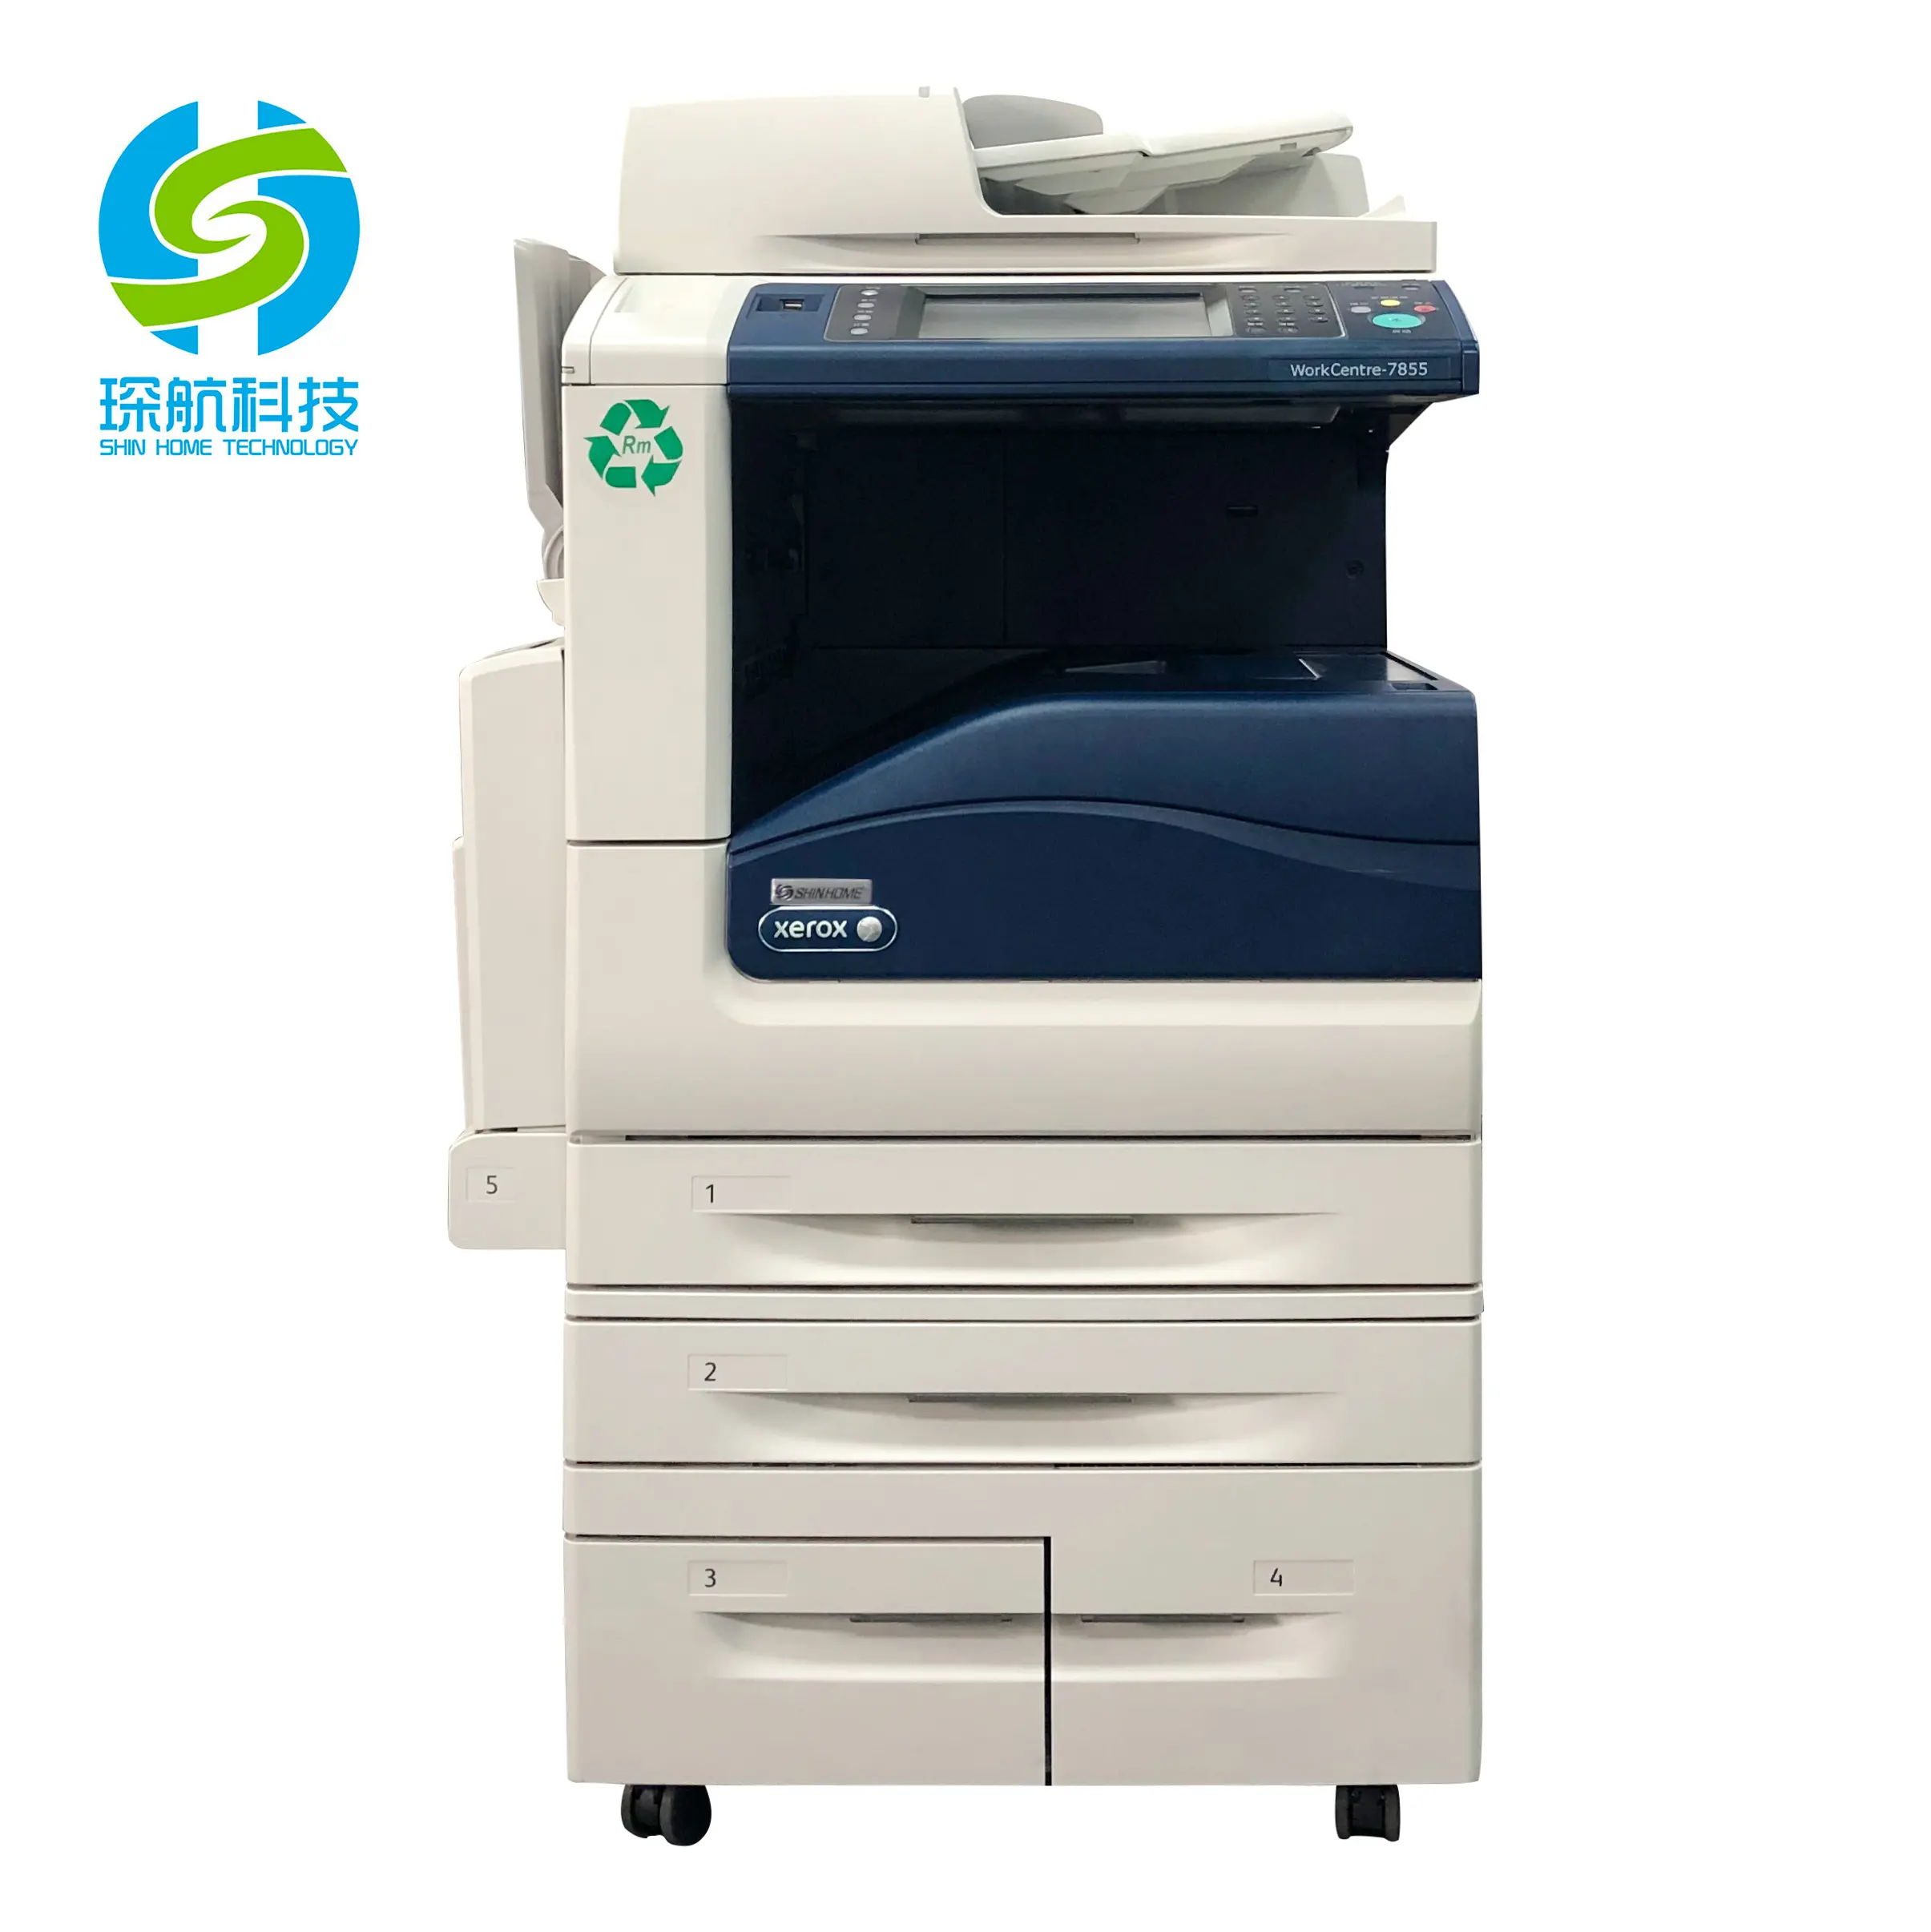 ססגוני בשימוש מכונות צילום עבור Xerox Workcentre 7855i מעתק מדפסות יעילות גבוהה דיגיטלי מכונות צילום מכונת דפוס